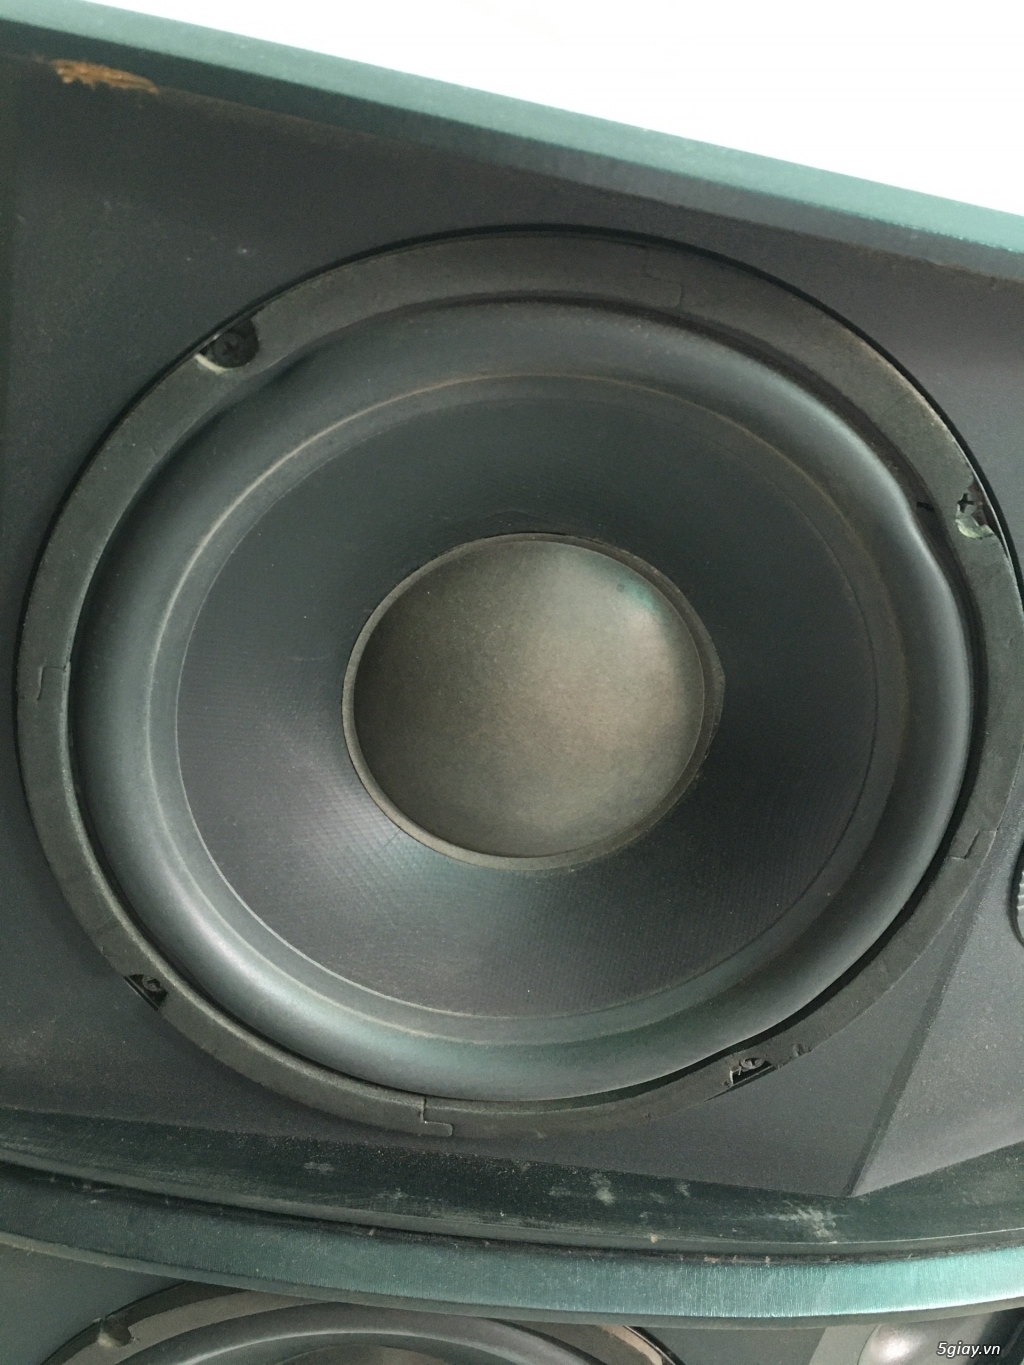 Cần Bán: Cặp loa JBL Bass 30cm giá tốt nhất hệ thống - 2